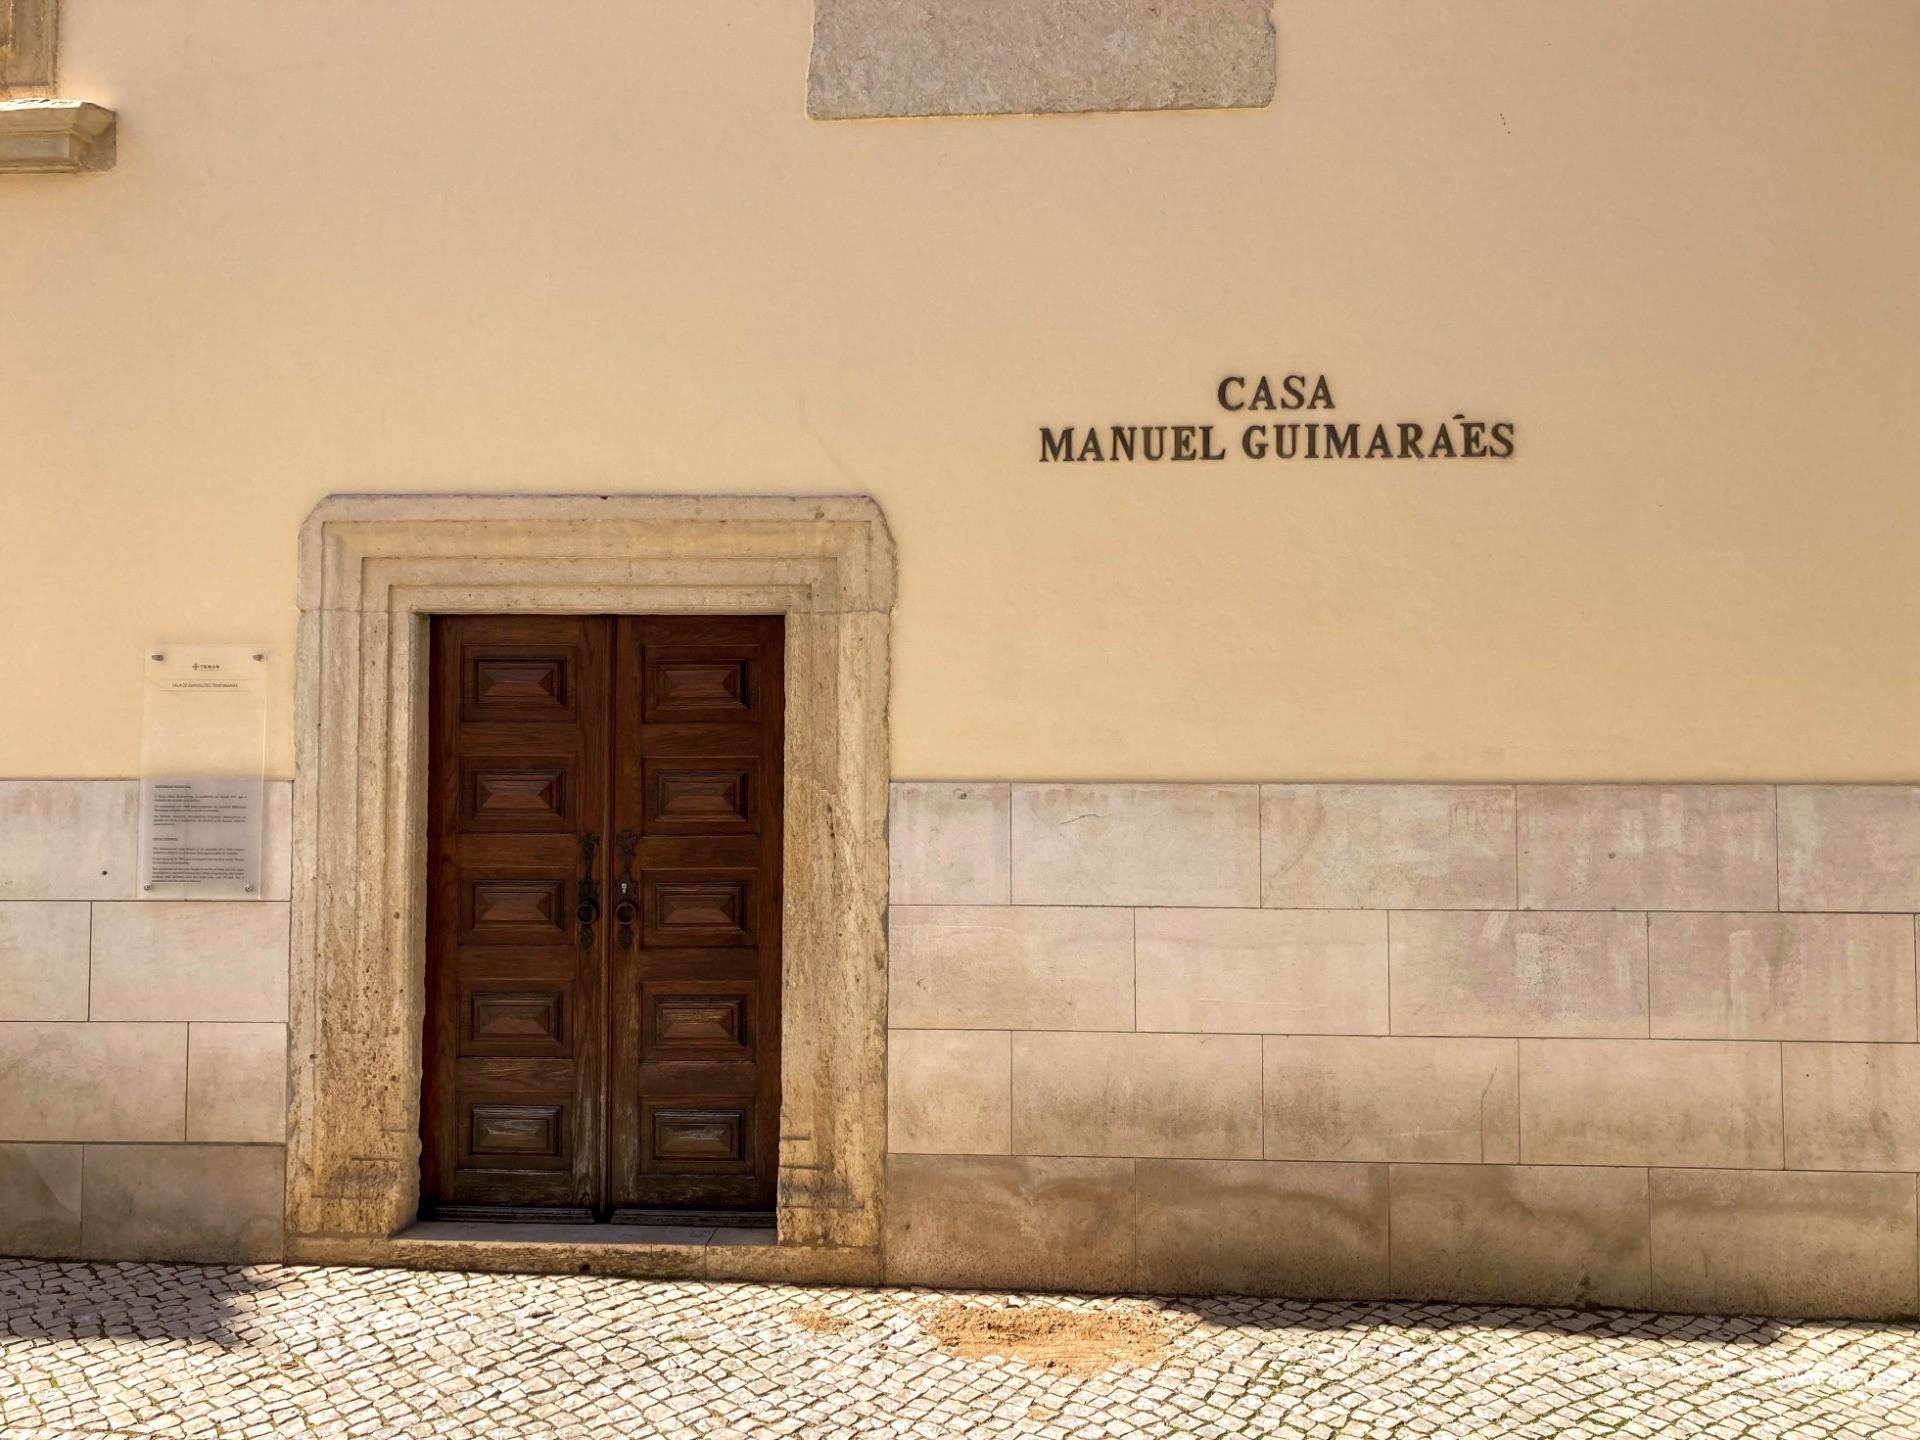 Fachada - A Casa Manuel Guimarães terá sido a casa onde viveu o famoso mestre de obras e arquiteto hispano-português João de Castilho, durante o período em que viveu em Tomar para realizar as obras do Convento de Cristo e as remodelações da Capela de Santa Iria.